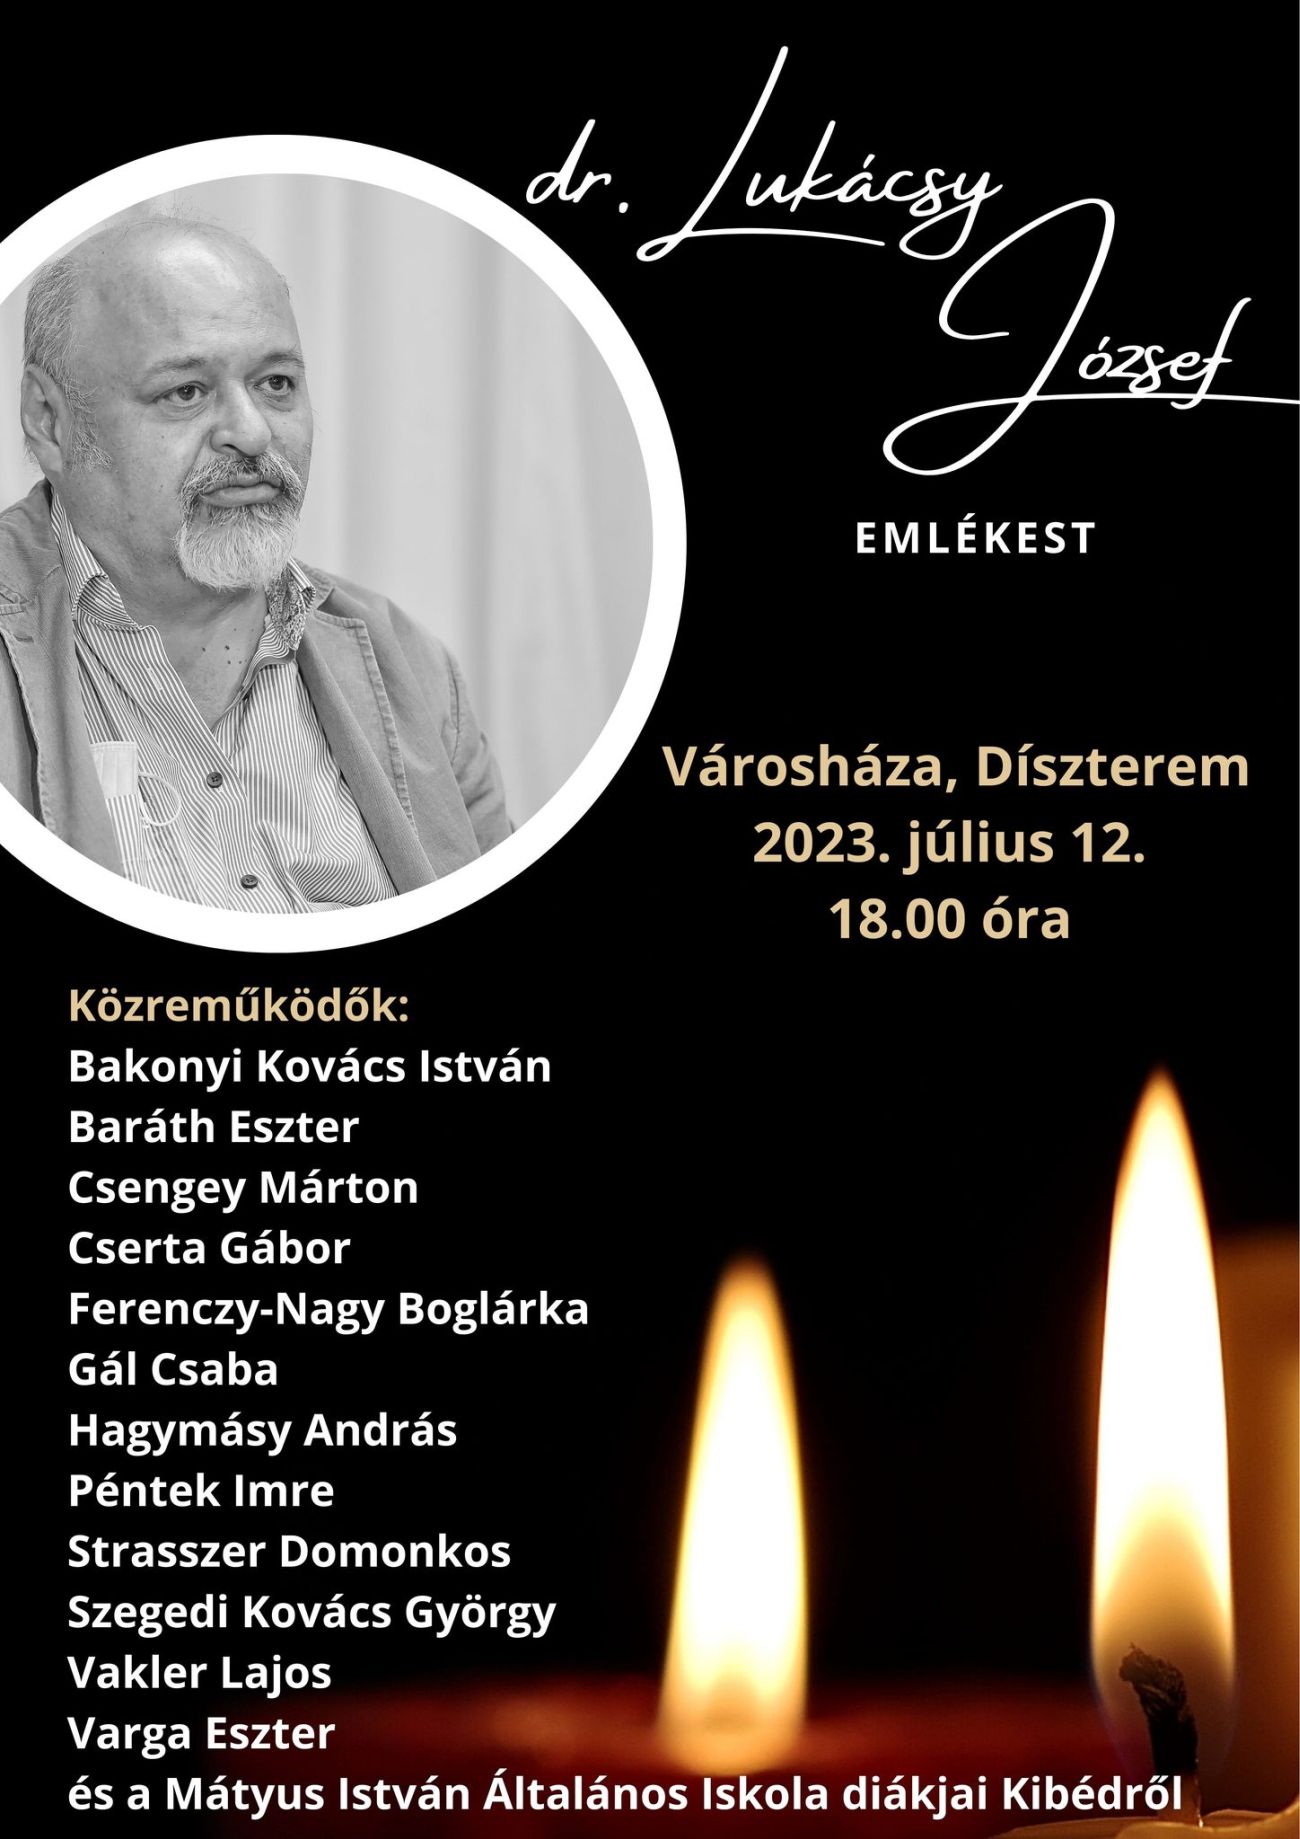 Dr. Lukácsy Józsefre emlékeznek július 12-én, szerdán a Városháza Dísztermében